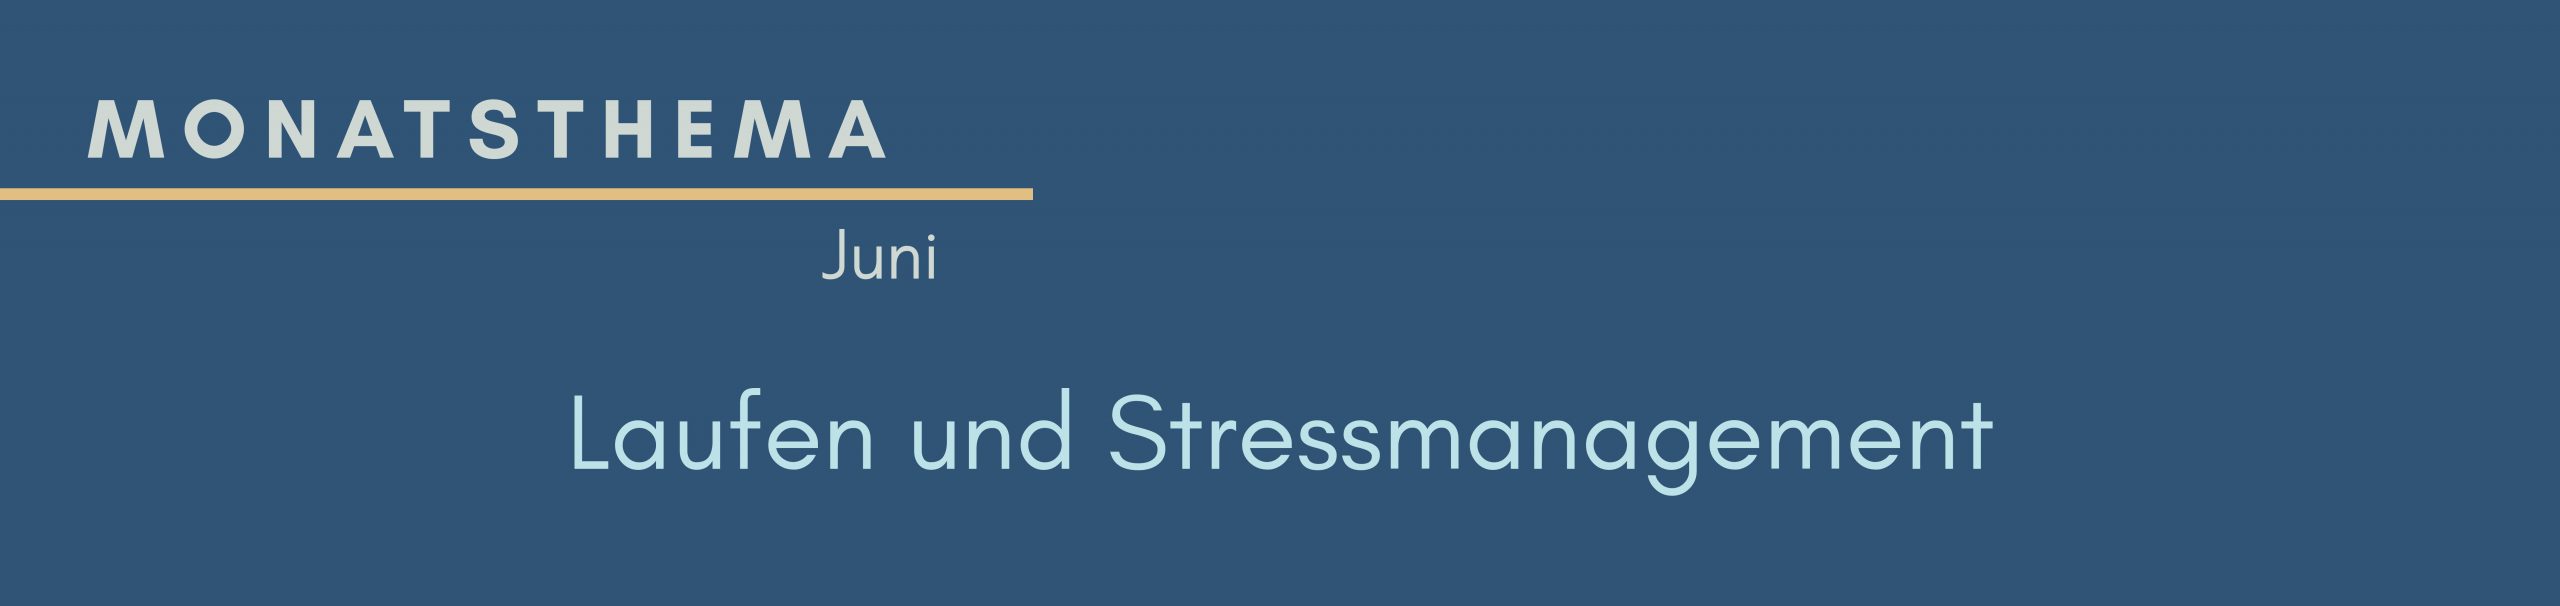 blauer Hintergrund mit Text: Monatsthema Juni, Laufen und Stressmanagement